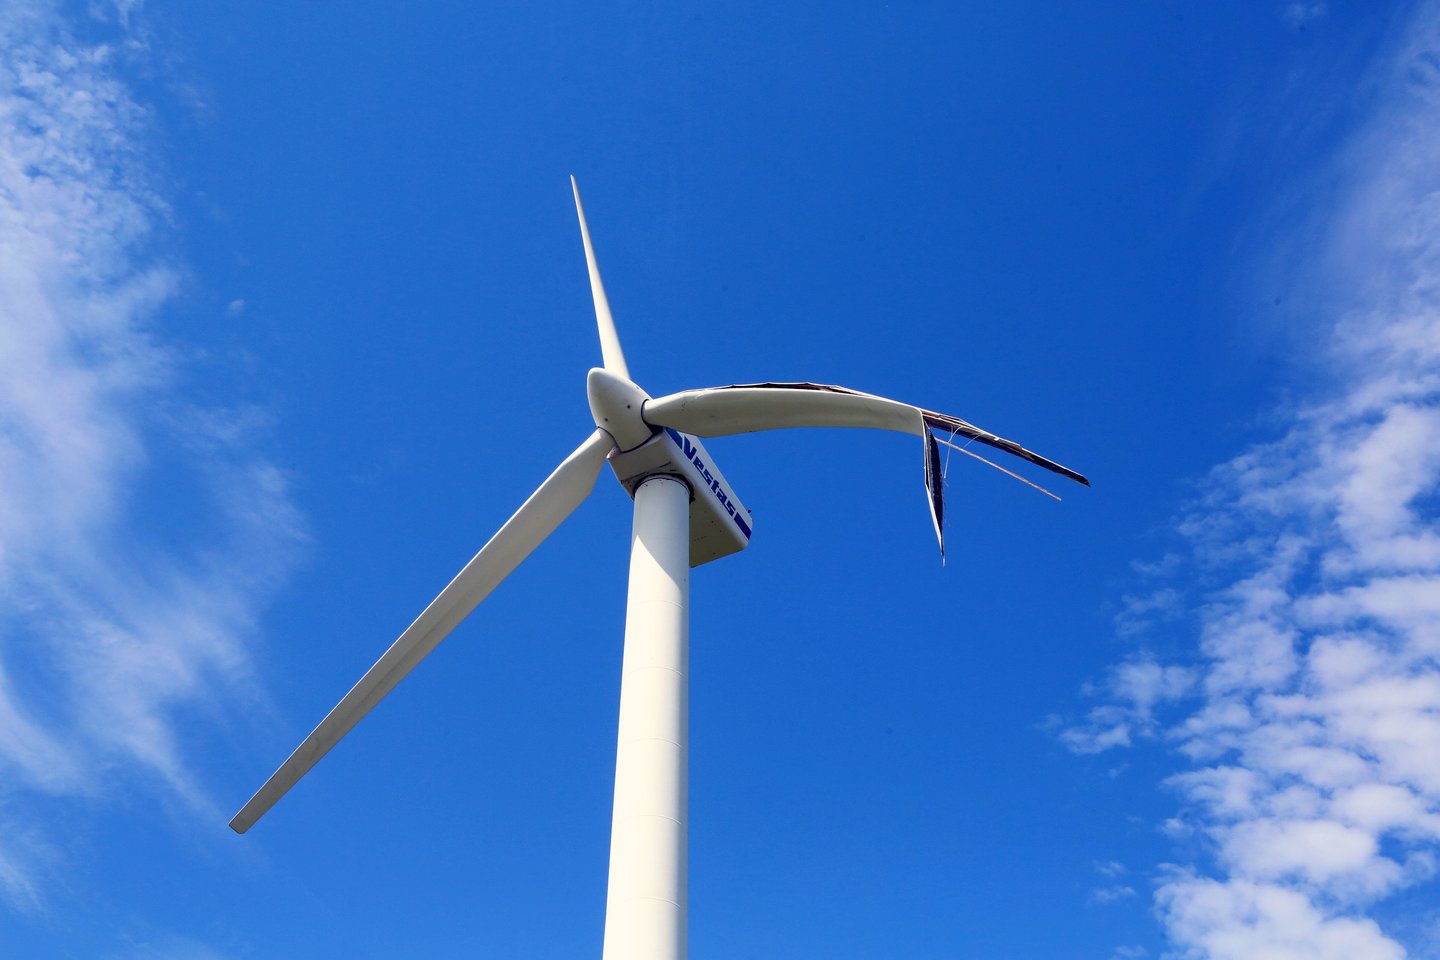 Kaimyniniame Plungės rajone bendrovė „Plungės vėjo energija“ rengiasi statyti galingą vėjo jėgainių parką, kurio dalis – 19 jėgainių – ribosis su Kretingos rajone esančiu Kartenos aerodromu.<br>M.Patašiaus nuotr.